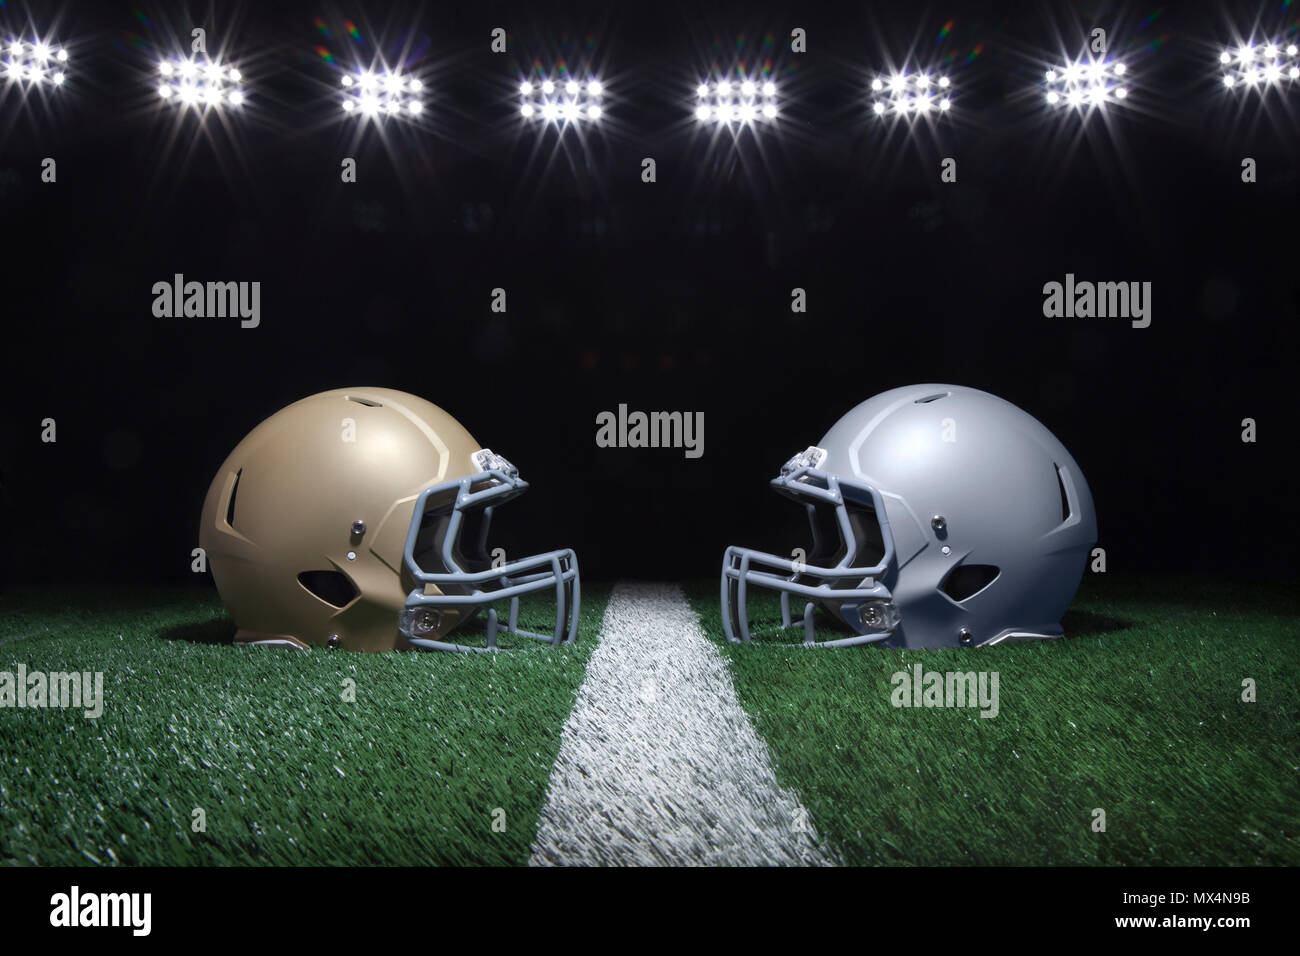 Gold und Silber Fußball Helme mit Blick auf ein Yard Linie unter Stadion Lichter in der Nacht Stockfoto